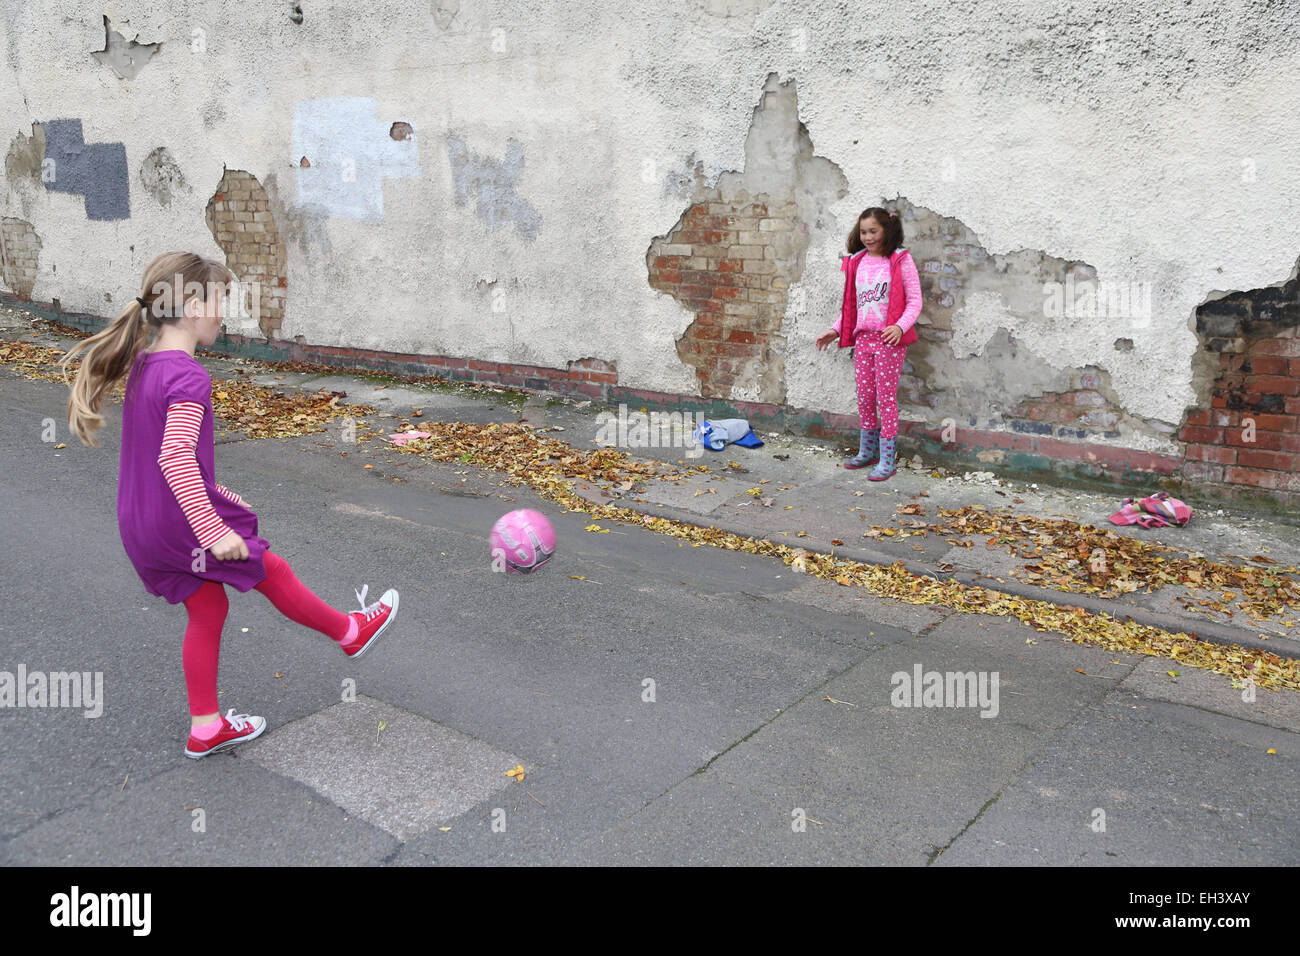 Mädchen spielen Fußball in der Street - Modell veröffentlicht Stockfoto